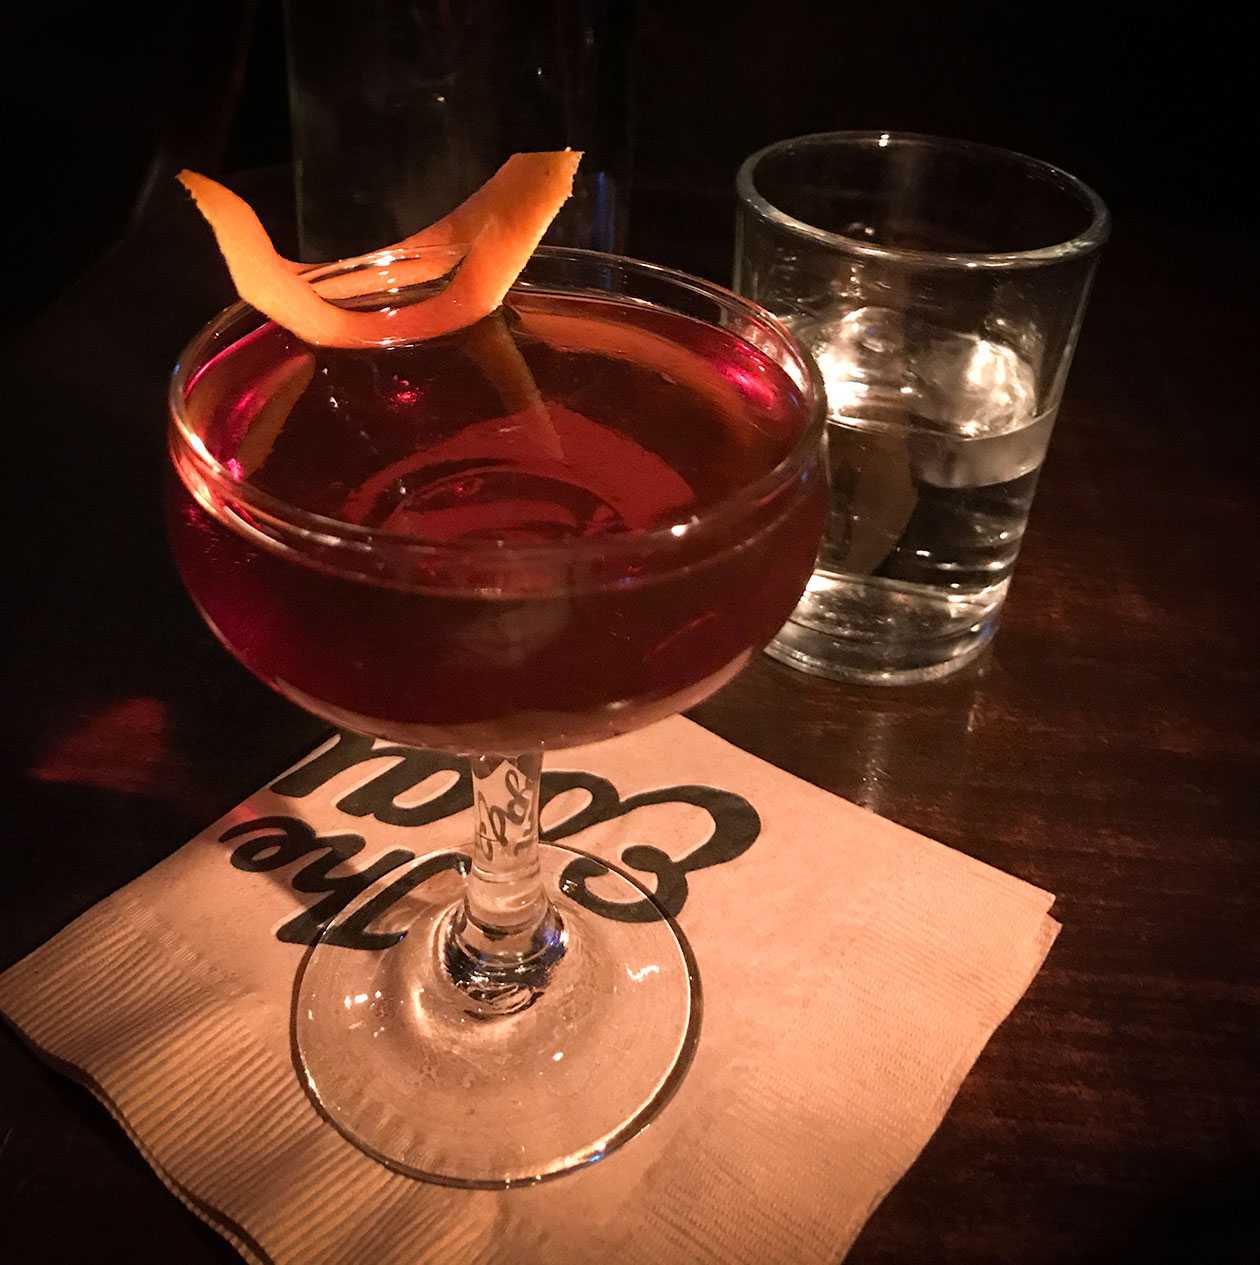 Esquire Tavern's Wonderlust King cocktail